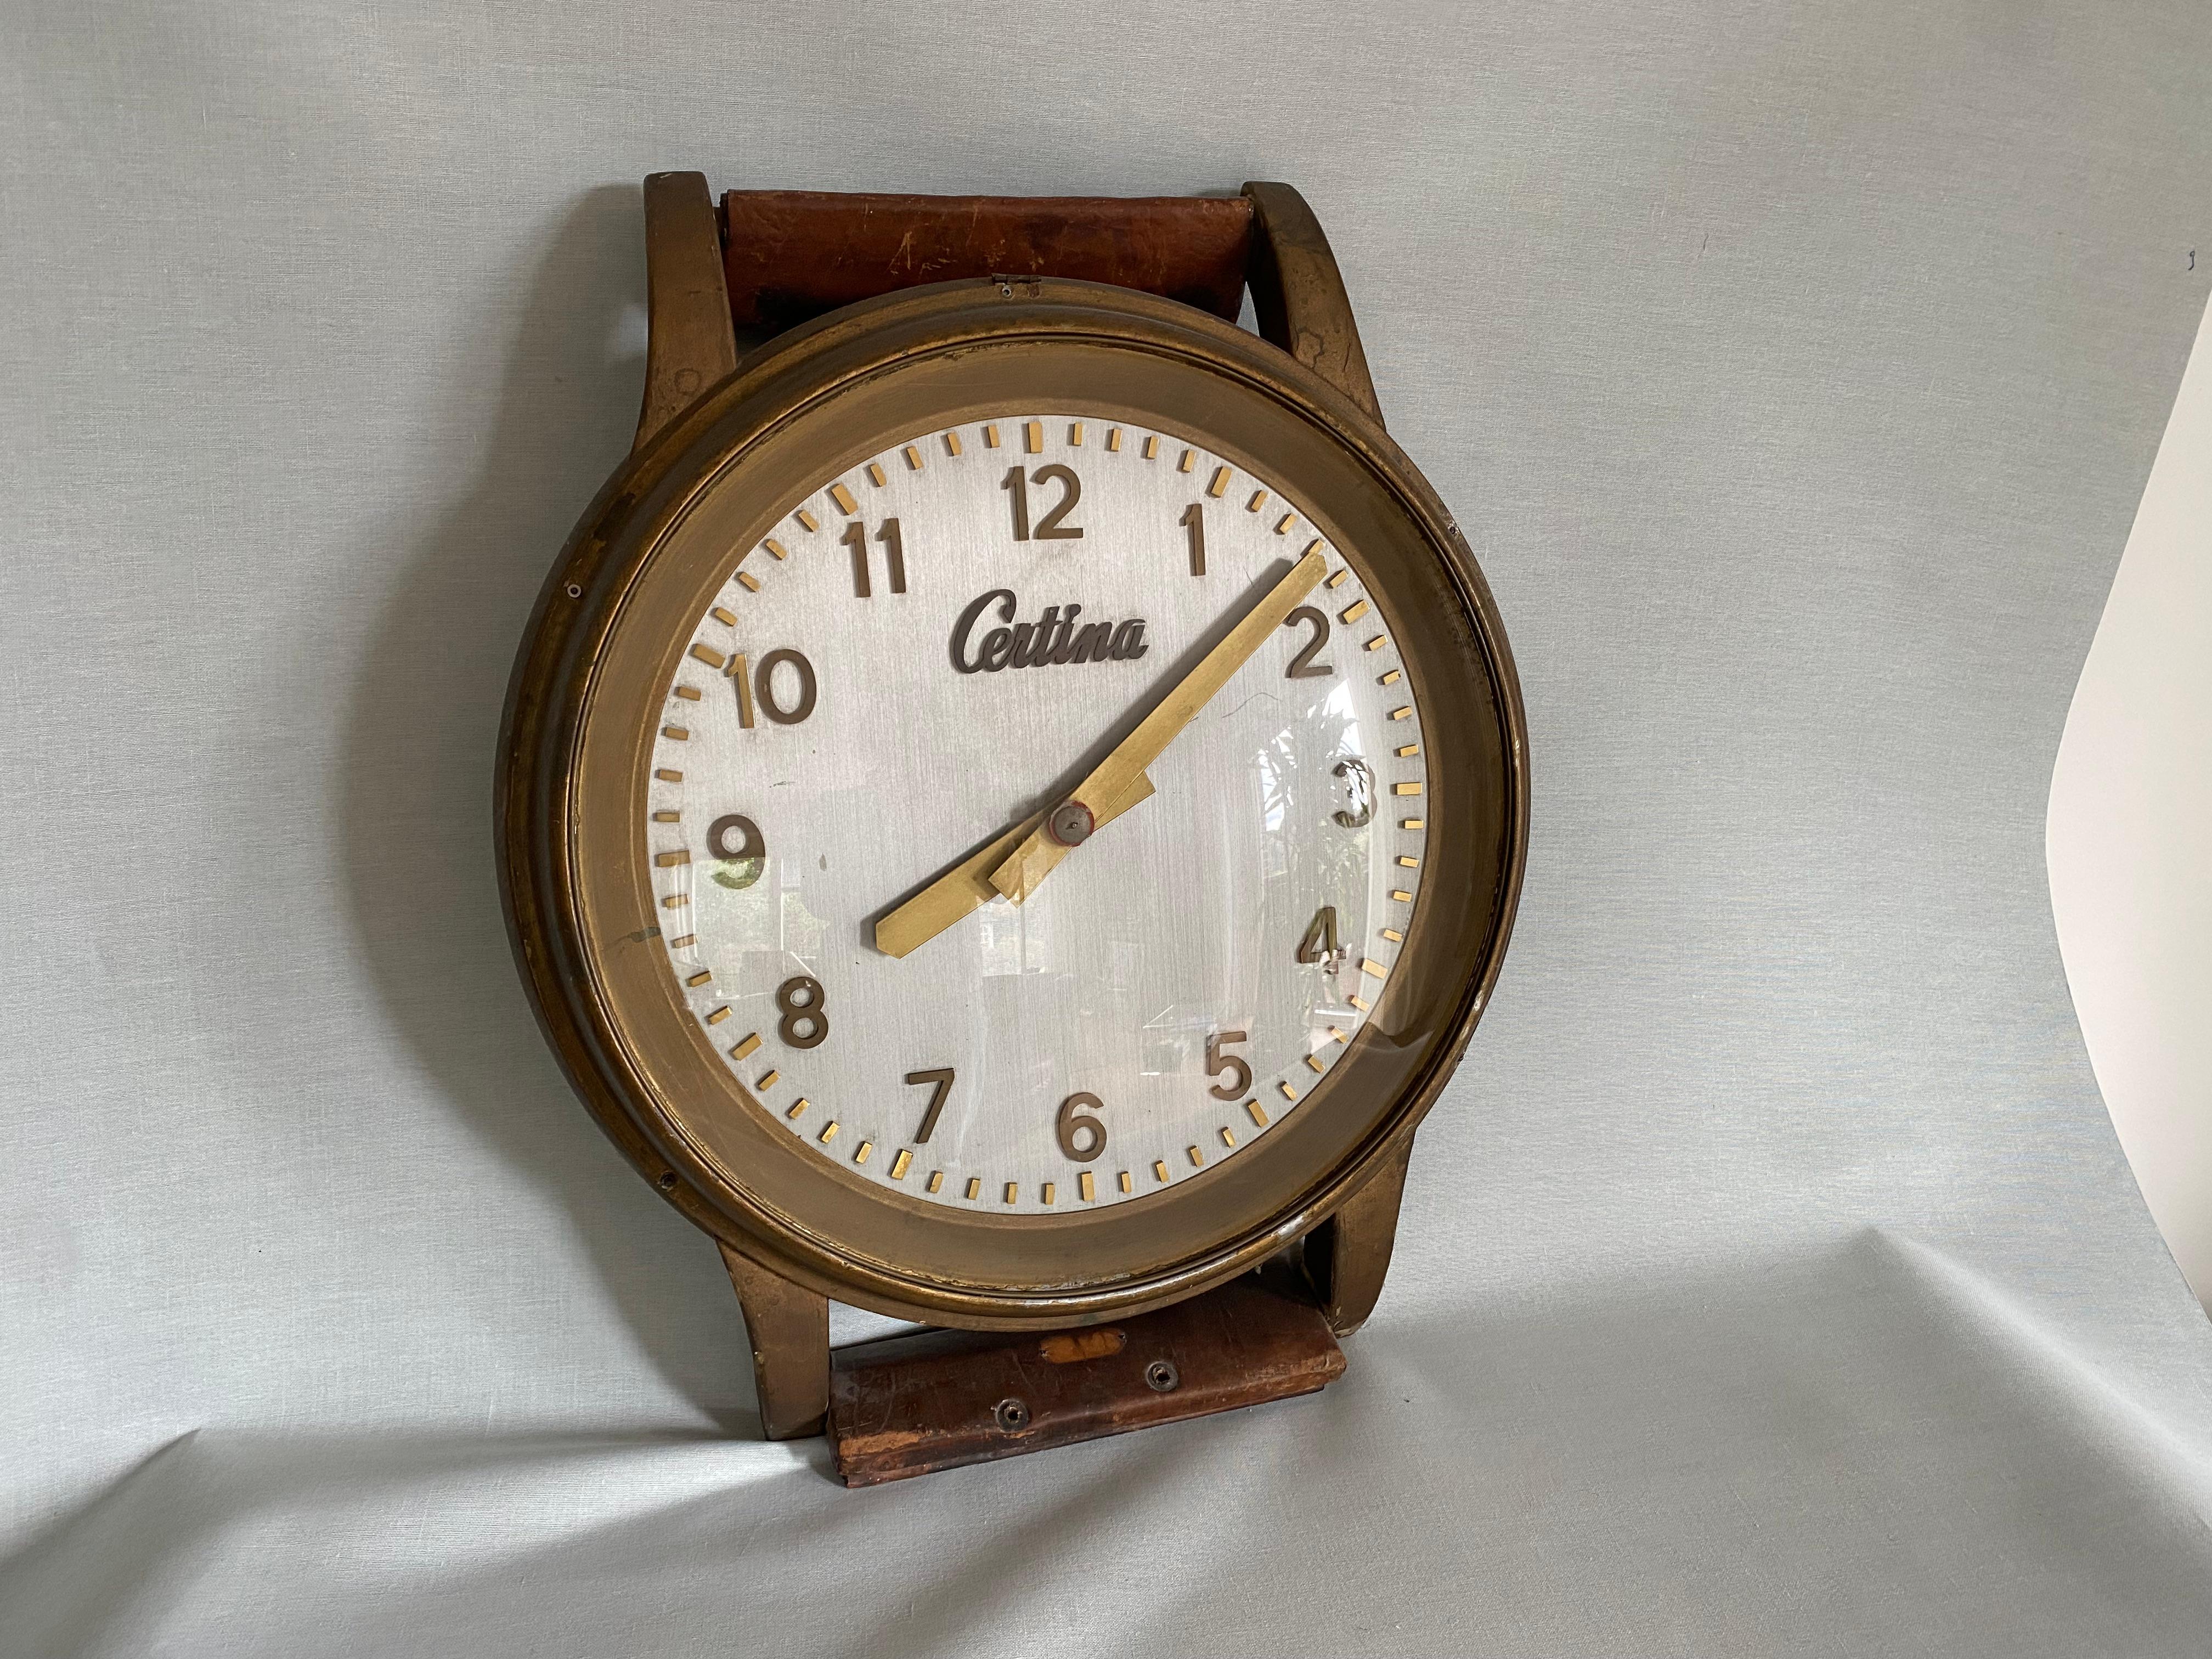 Sehr seltene und alte Werbung des Schweizer Uhrenherstellers 